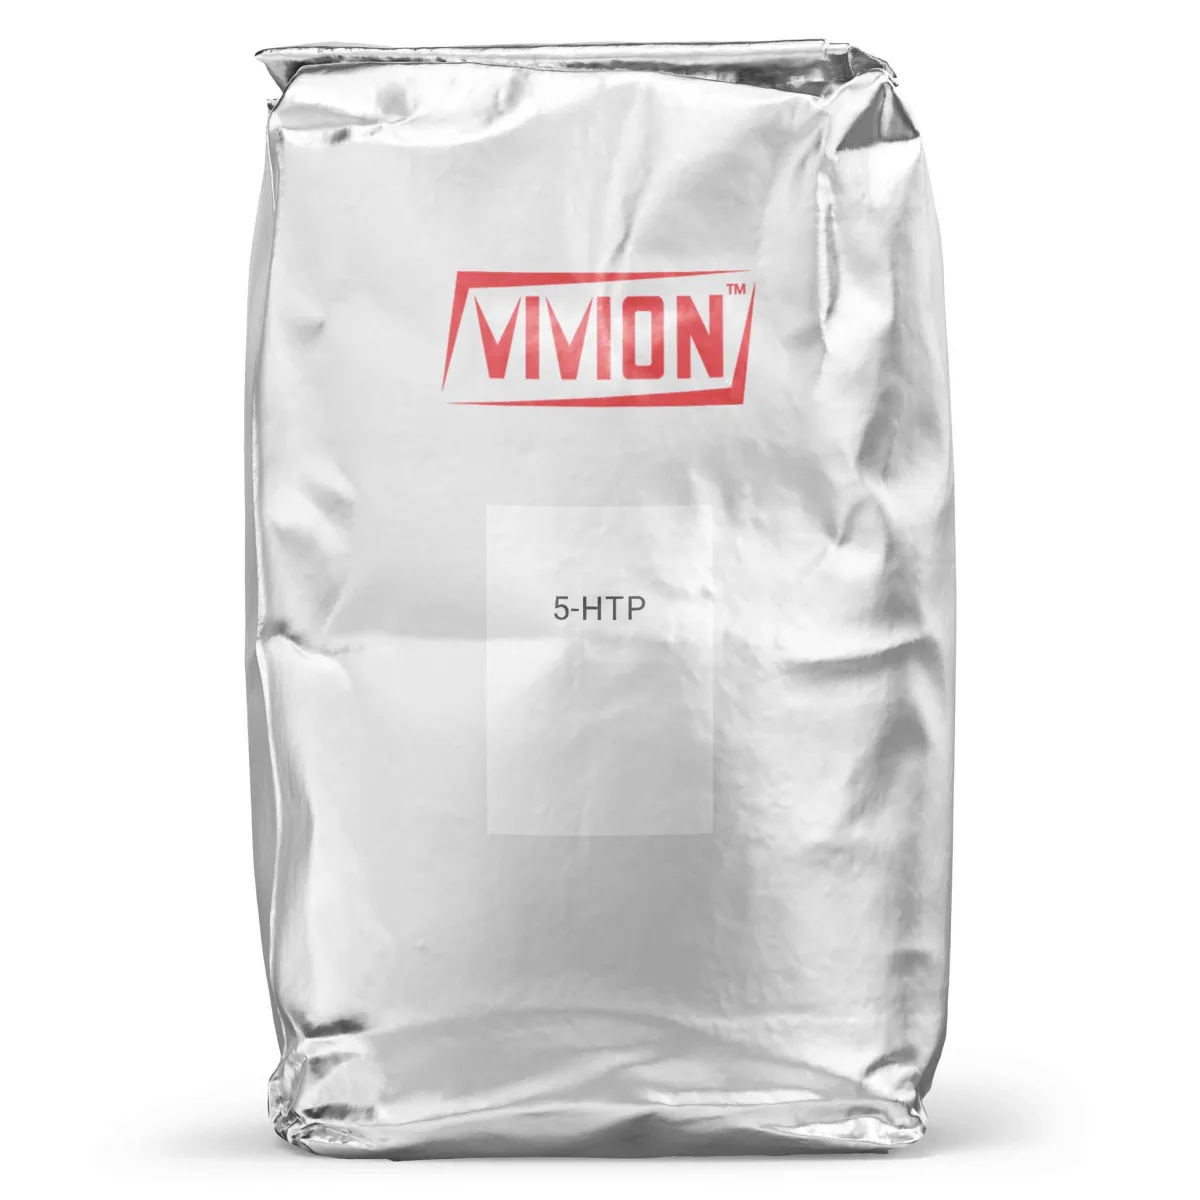 A bag of Vivion's wholesale 5-HTP.